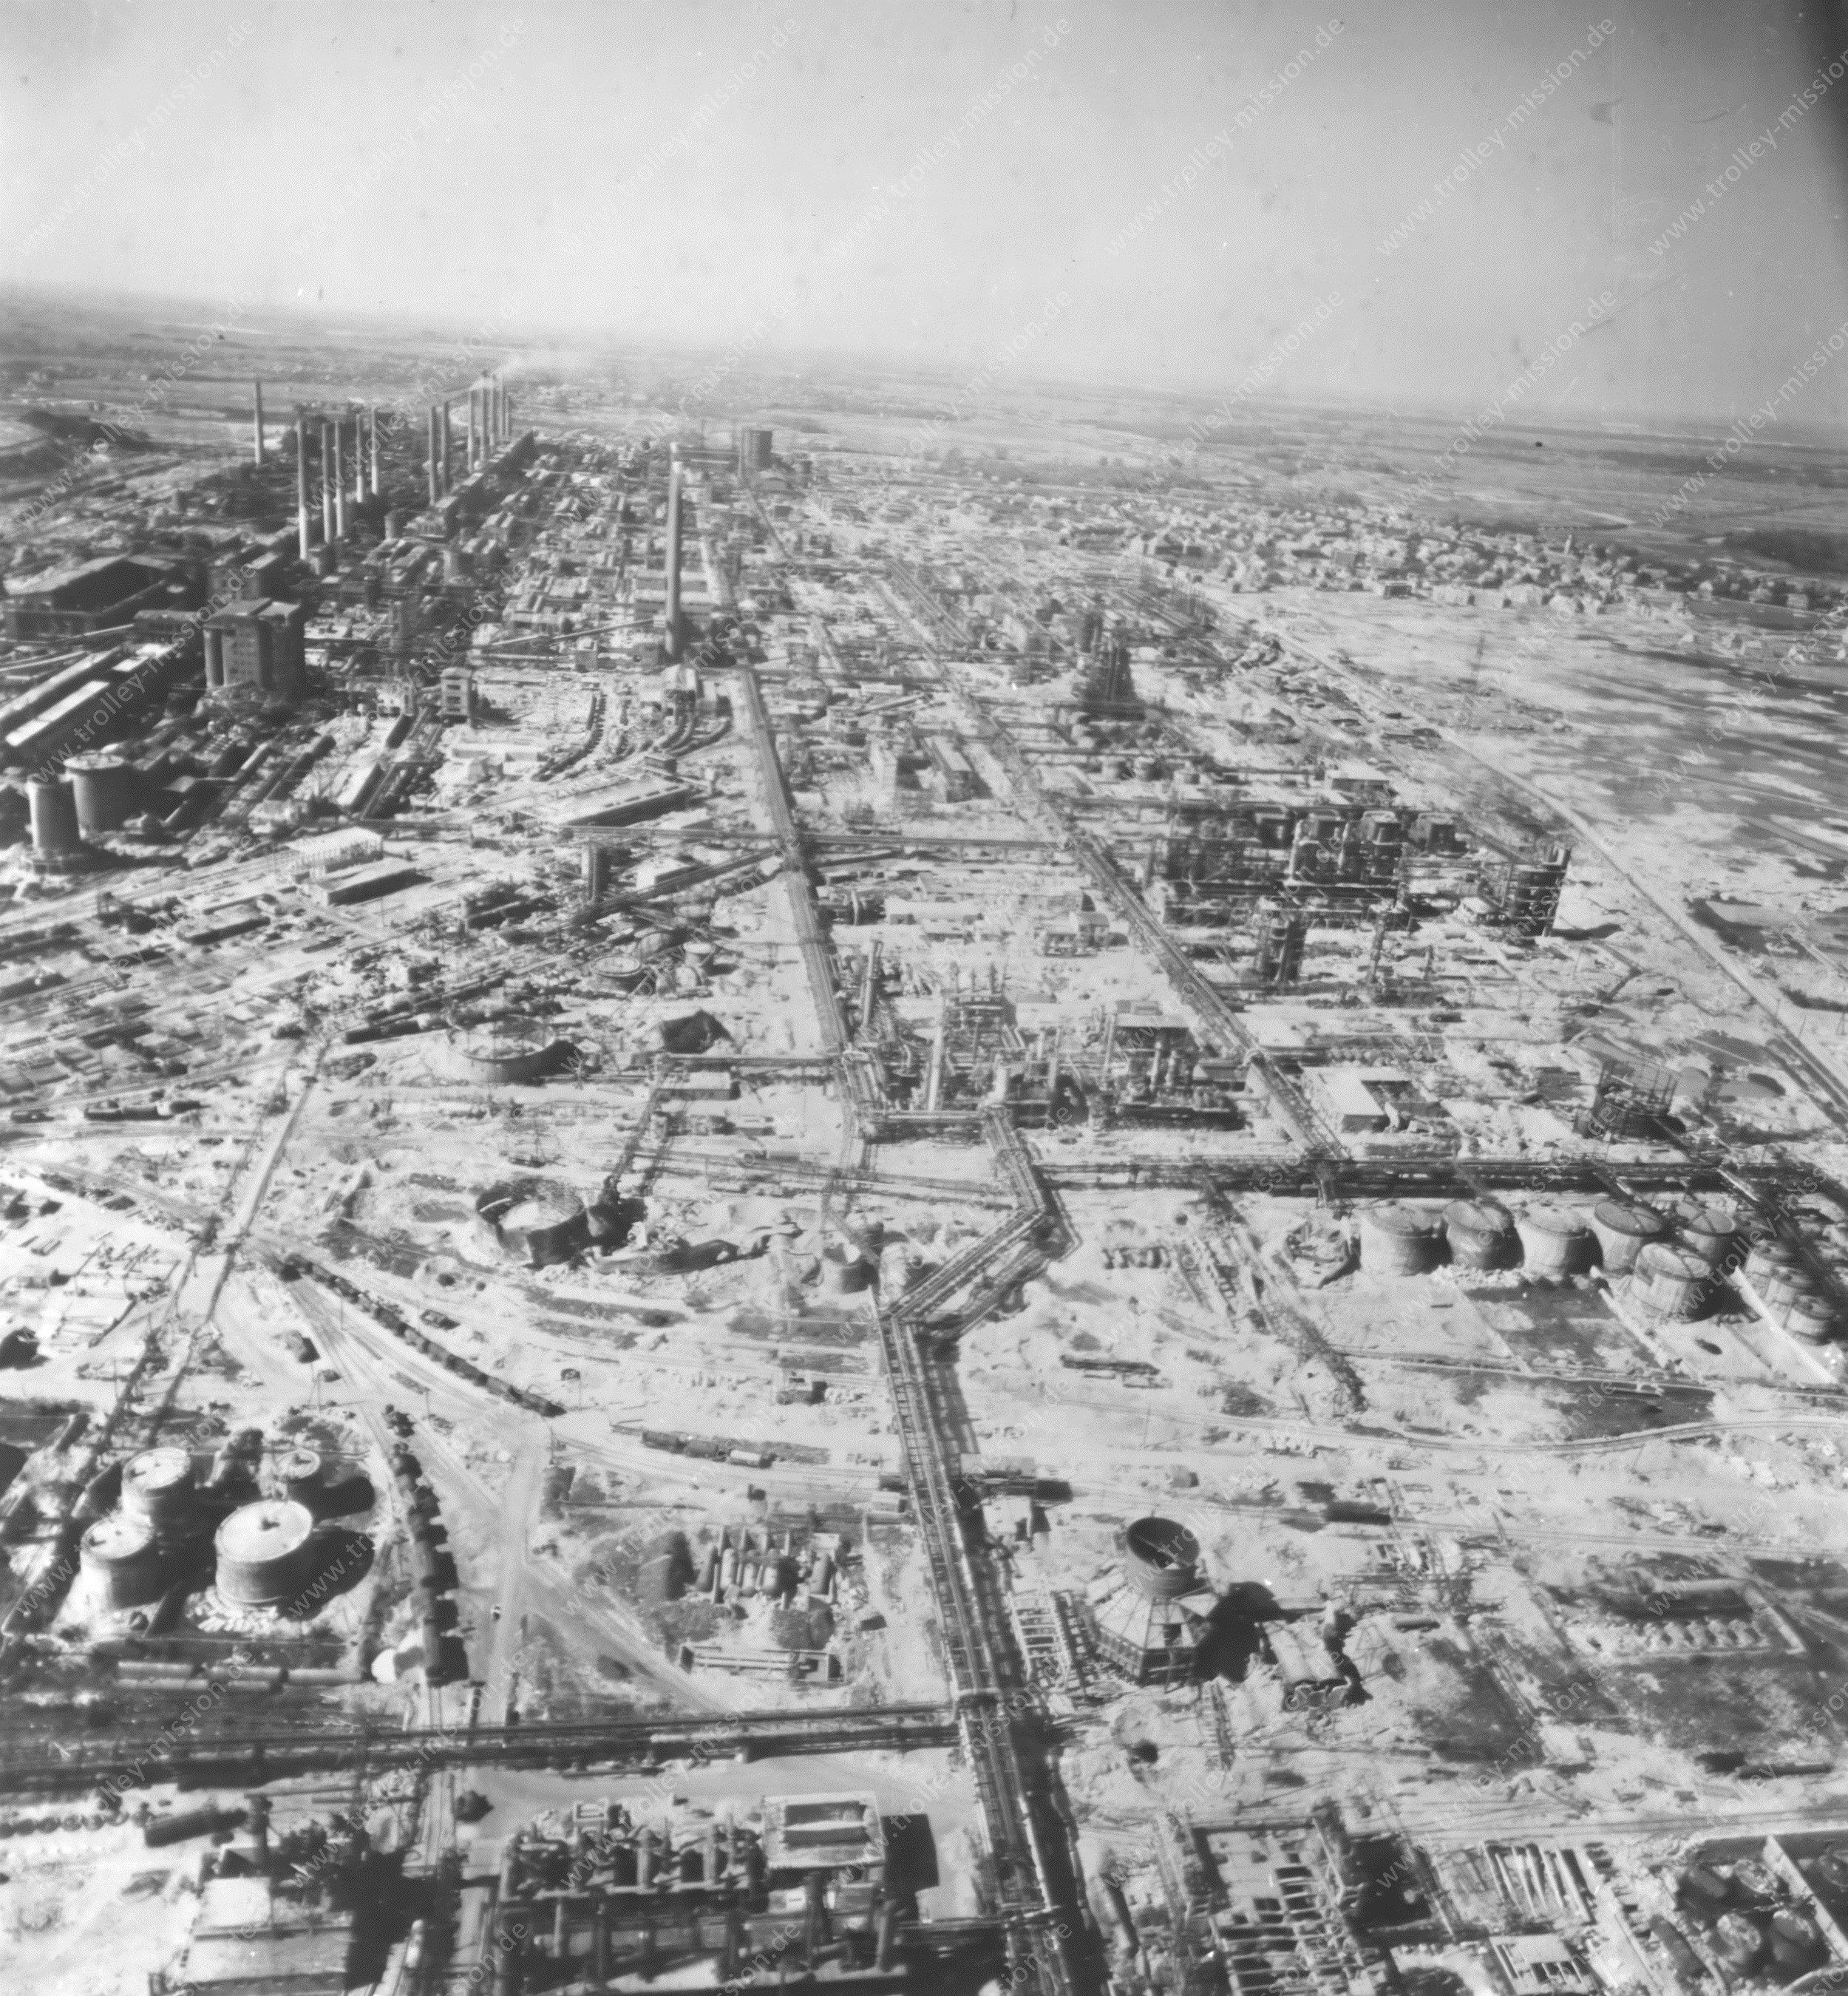 Leuna-Werke Merseburg - Luftbild der Hydrierwerke nach den Luftangriffen